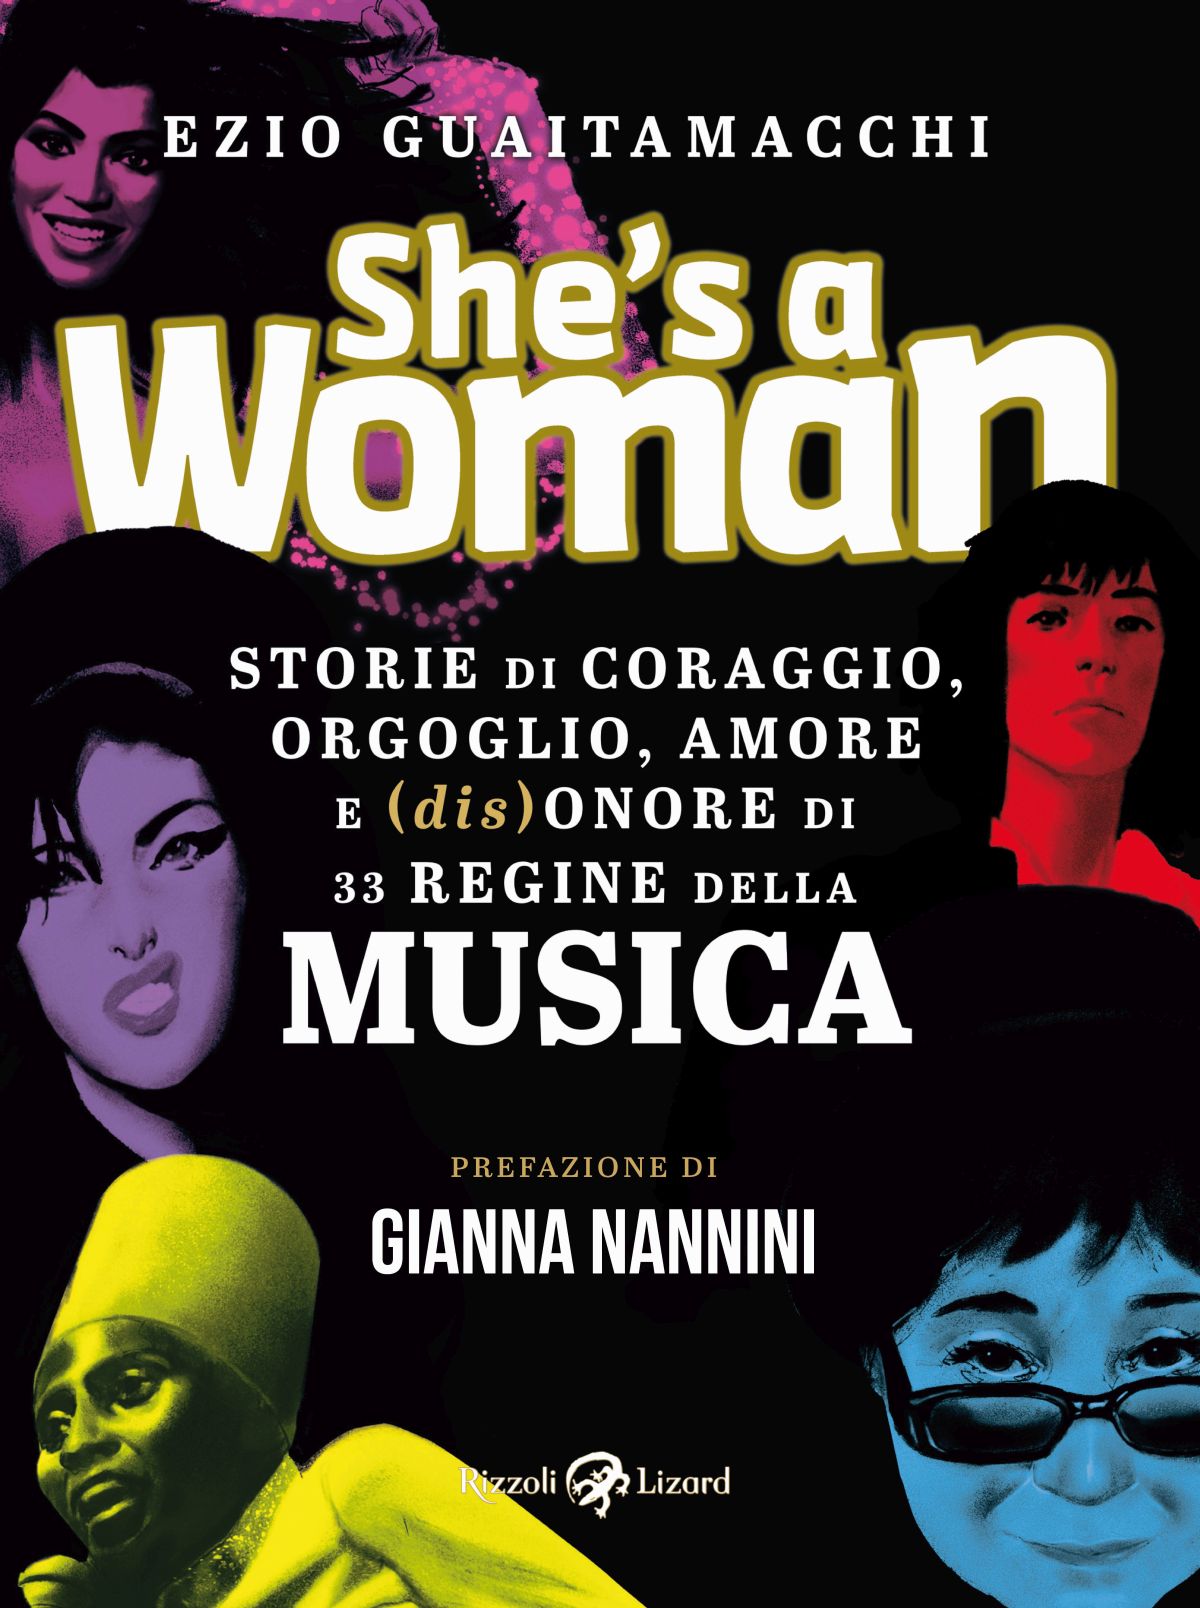 È in libreria e negli store digitali “She’s a woman” il nuovo libro dello scrittore e giornalista musicale Ezio Guaitamacchi